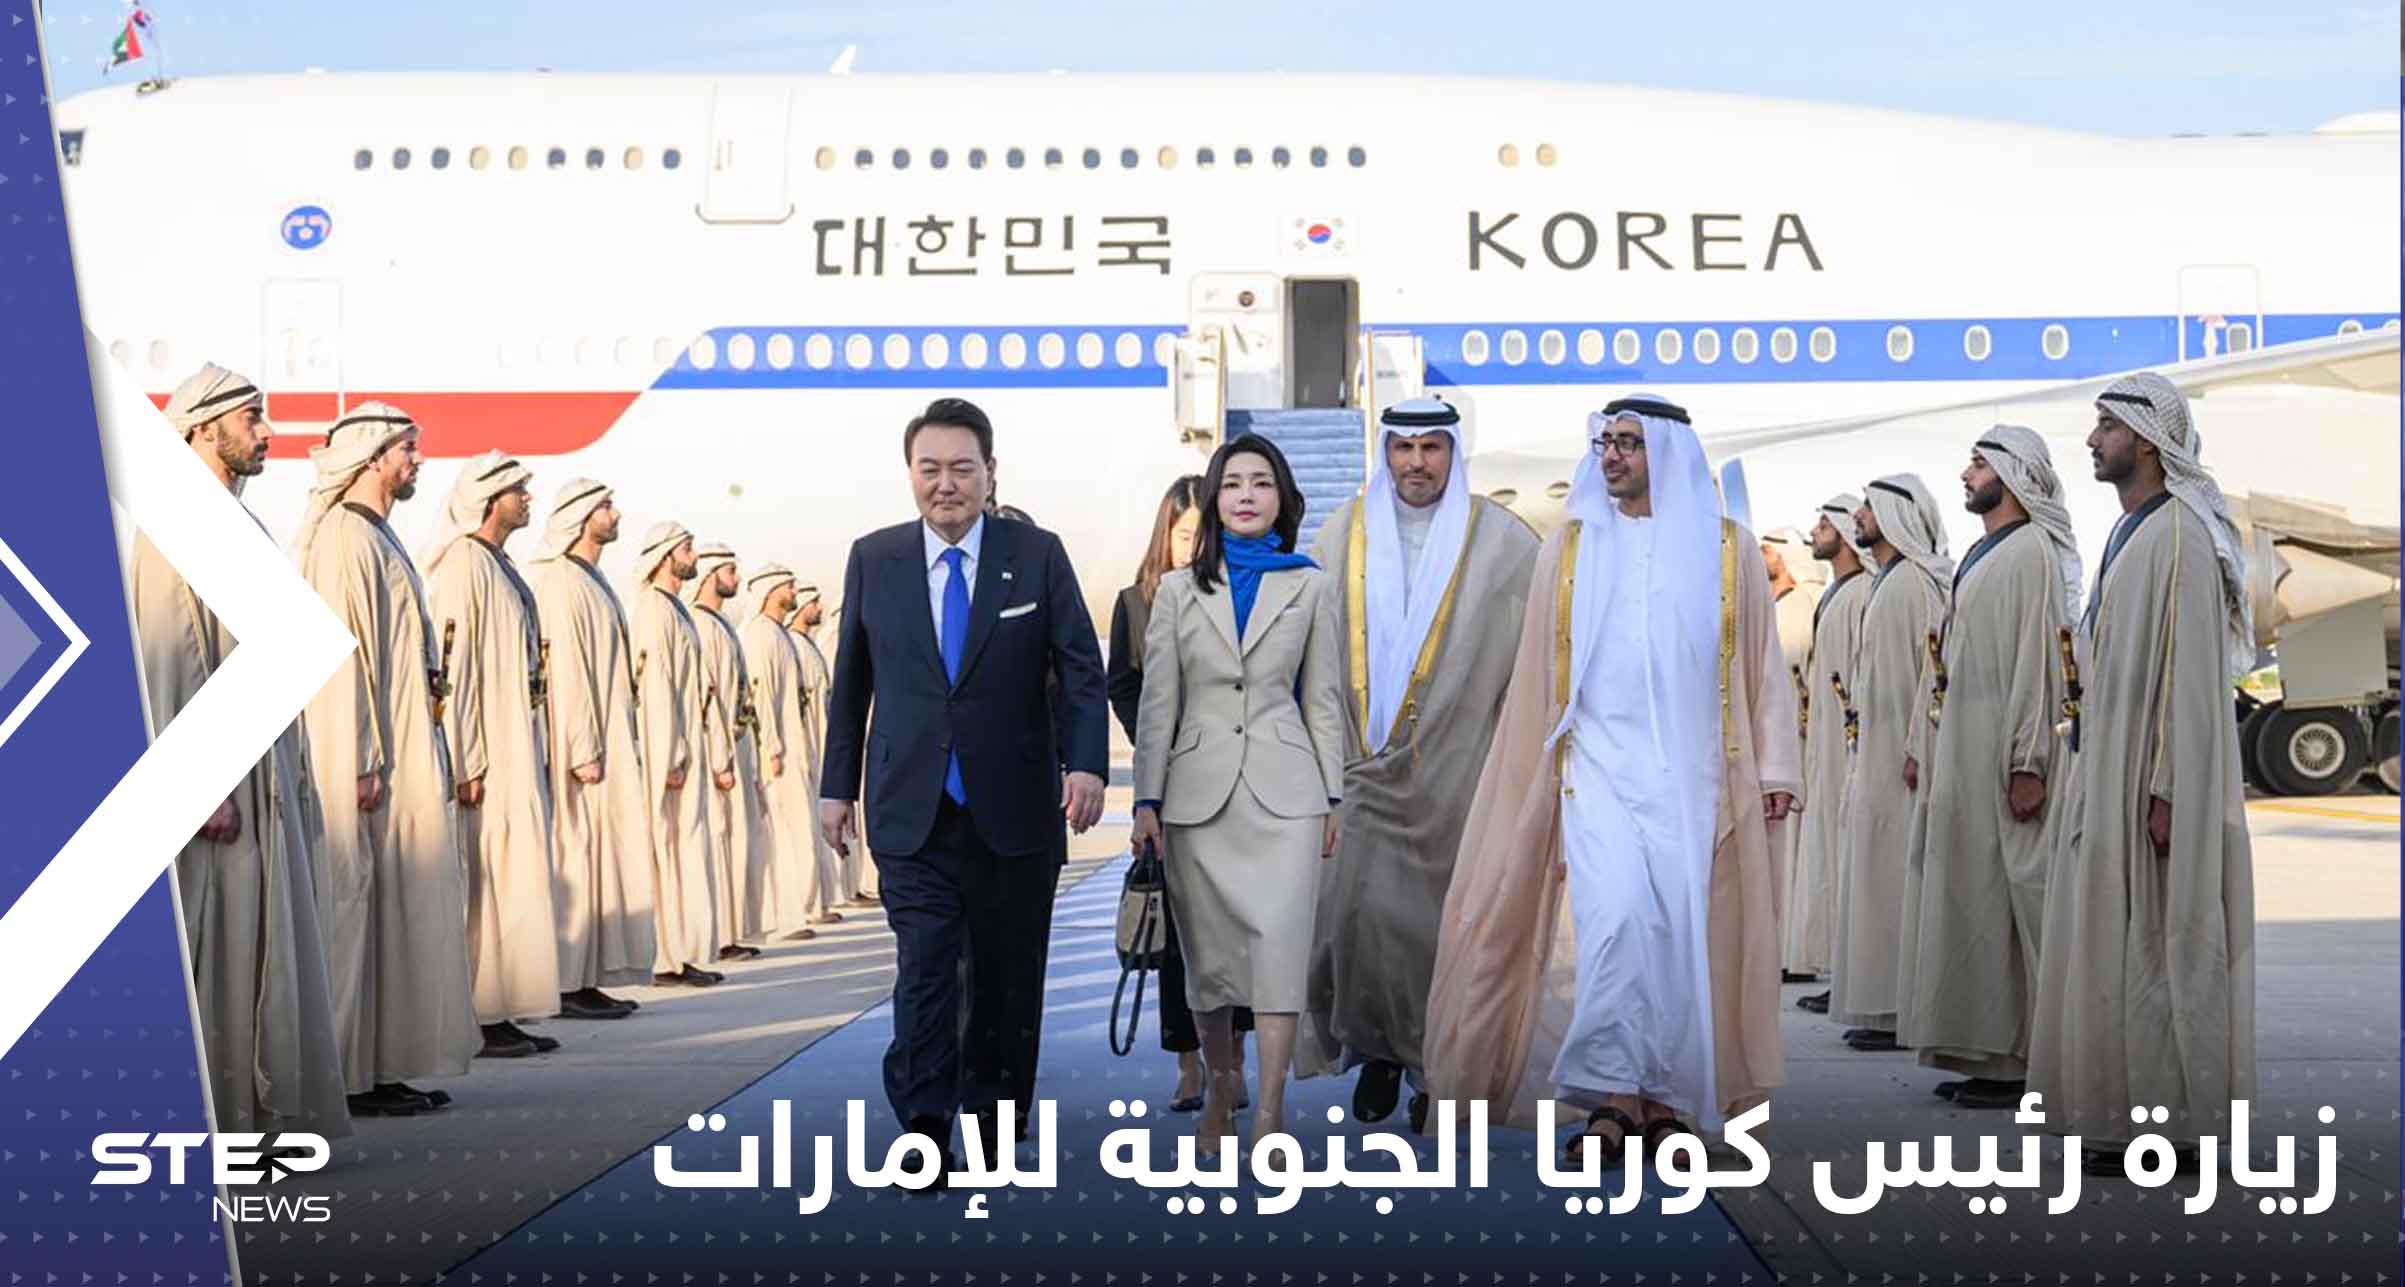 وصول رئيس كوريا الجنوبية إلى الإمارات